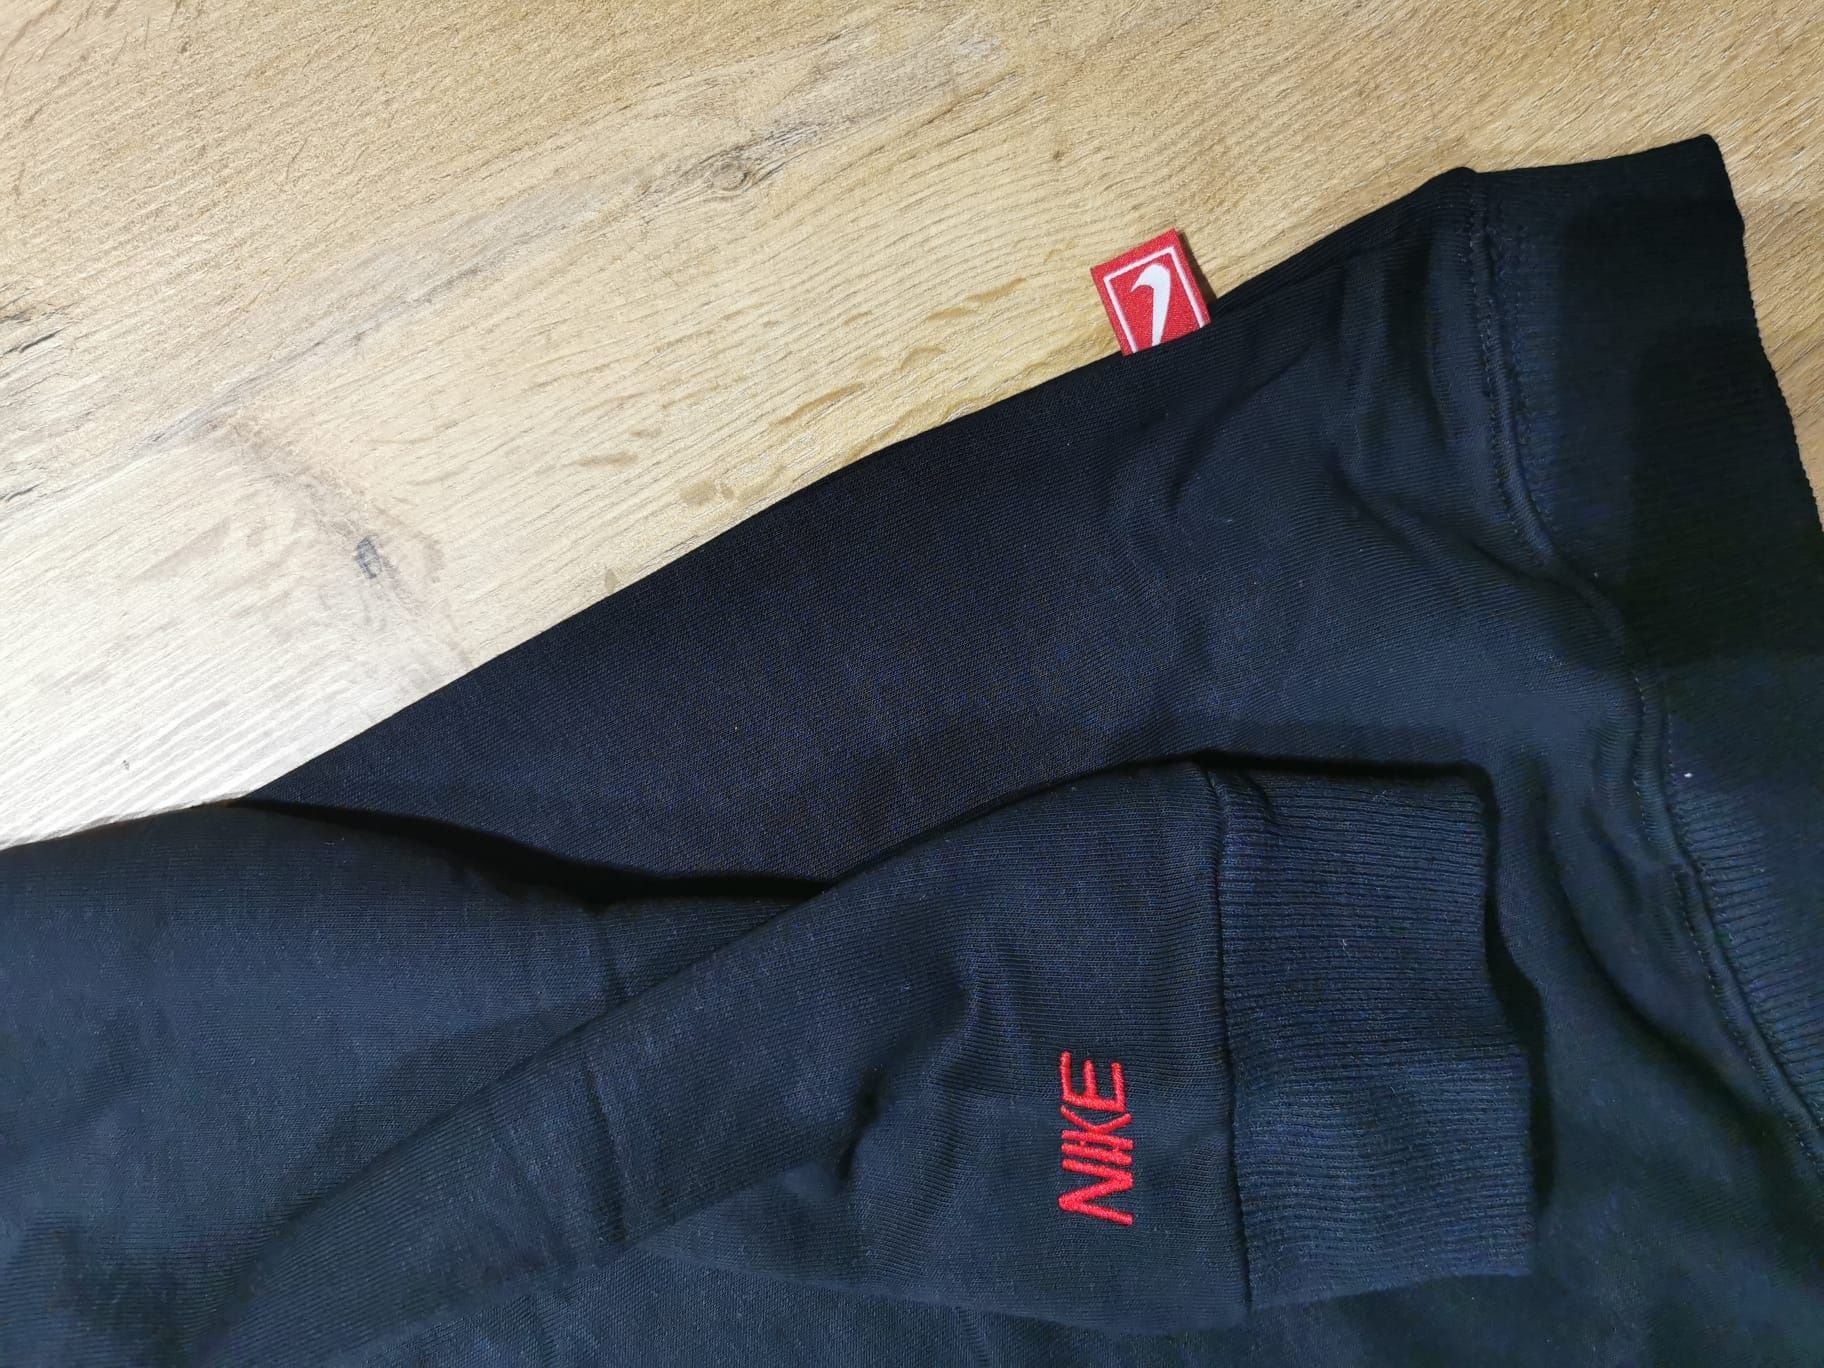 Bluza męskia Nike, dostępne rozmiary M, L, XL, XLL.